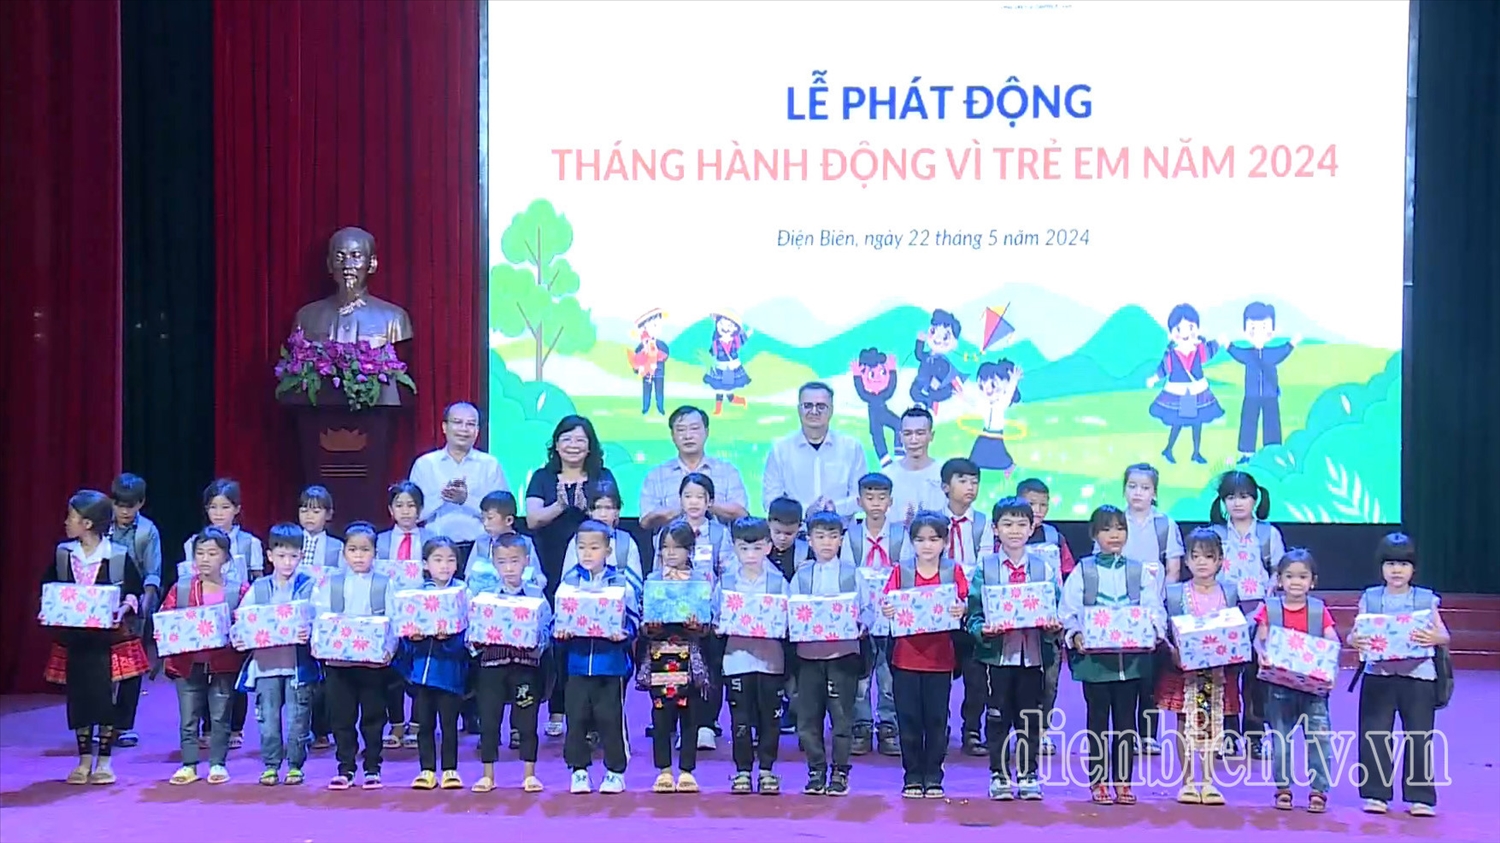 Lãnh đạo tỉnh Điện Biên cùng đại biểu trao quà cho trẻ em có hoàn cảnh khó khăn. (Ảnh: Dienbientv.vn)